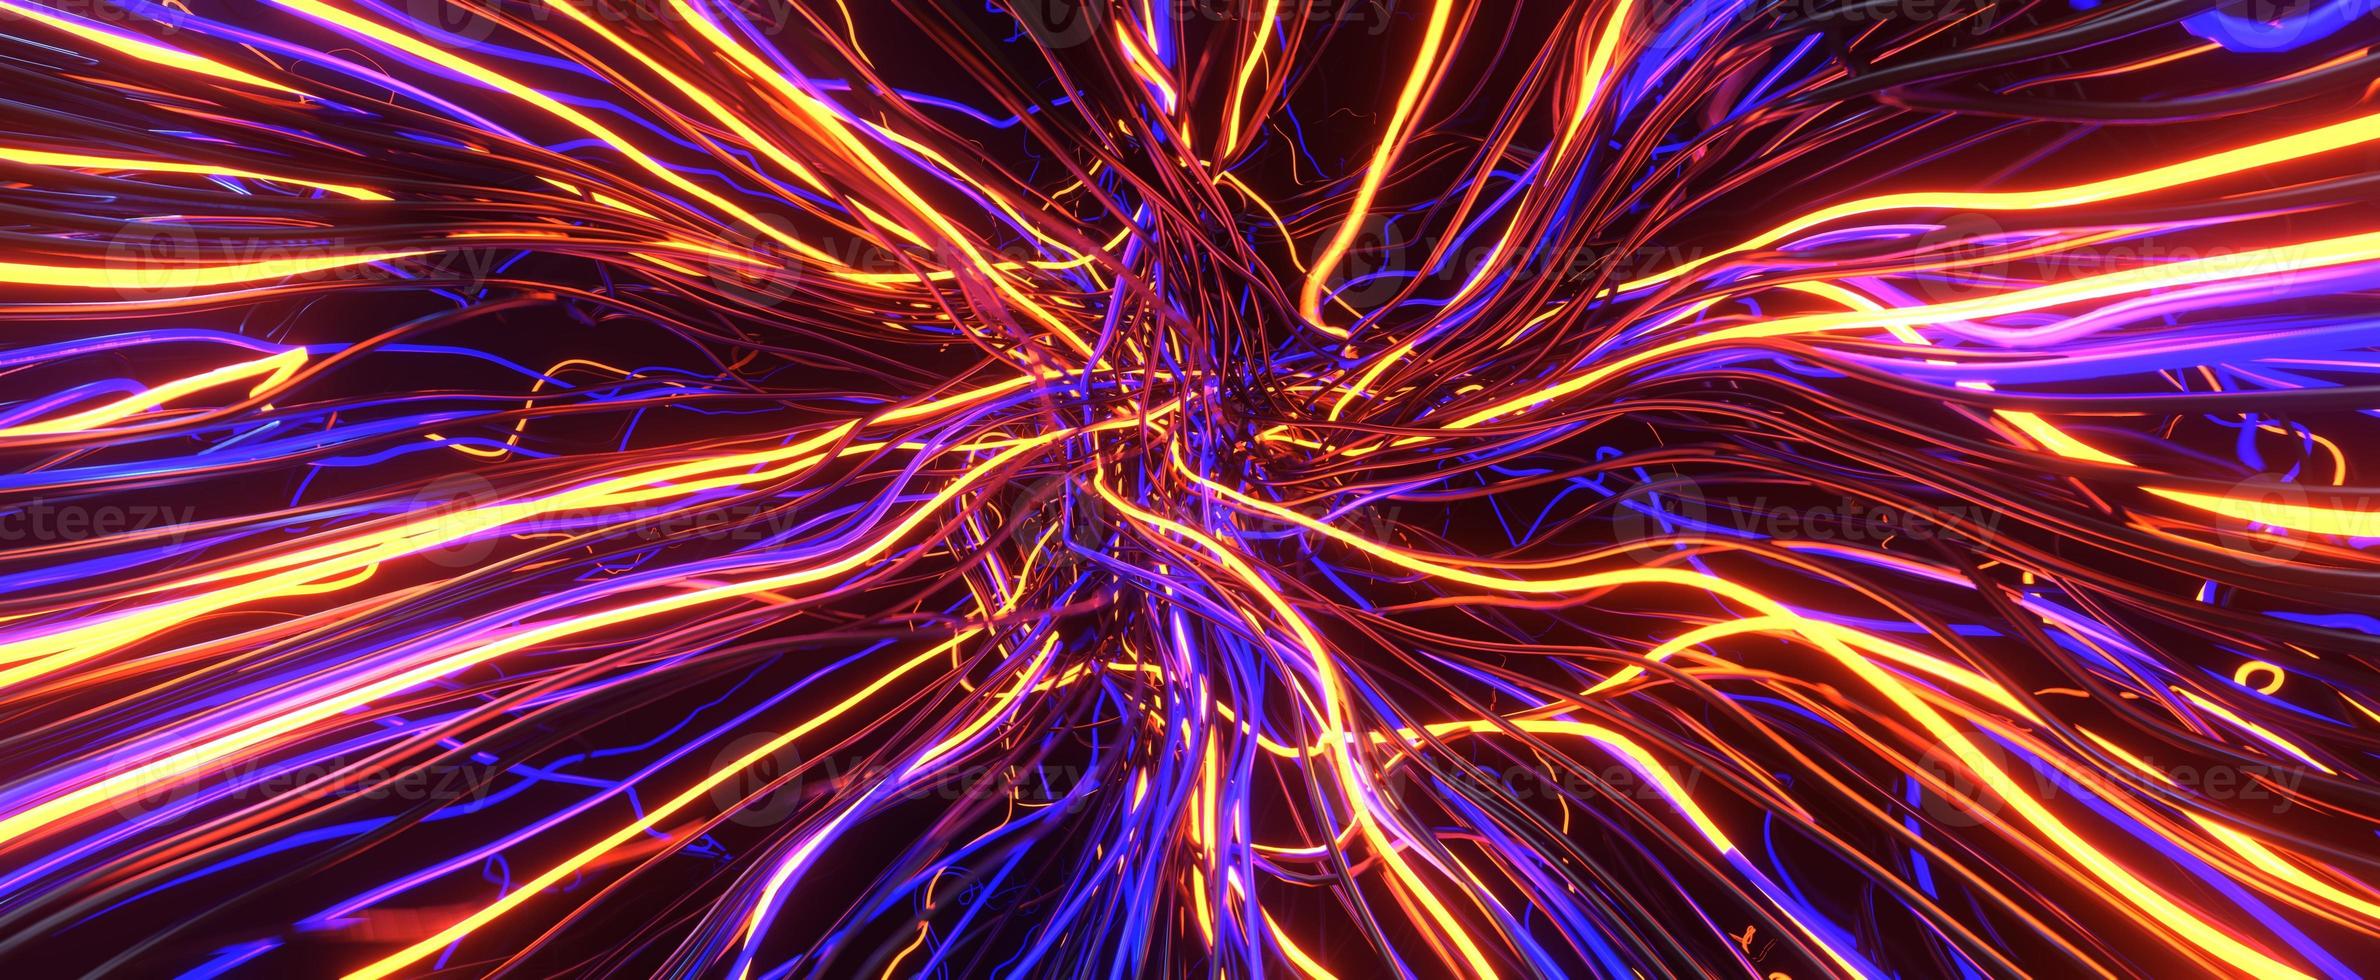 verwirrte energiekabel mit neonglühen. ineinander verschlungener strom aus lila 3d-renderdrähten, die zu knoten verdreht sind. futuristische digitale Kommunikationsleitungen mit ständiger Bewegung und Informationsüberflutung foto